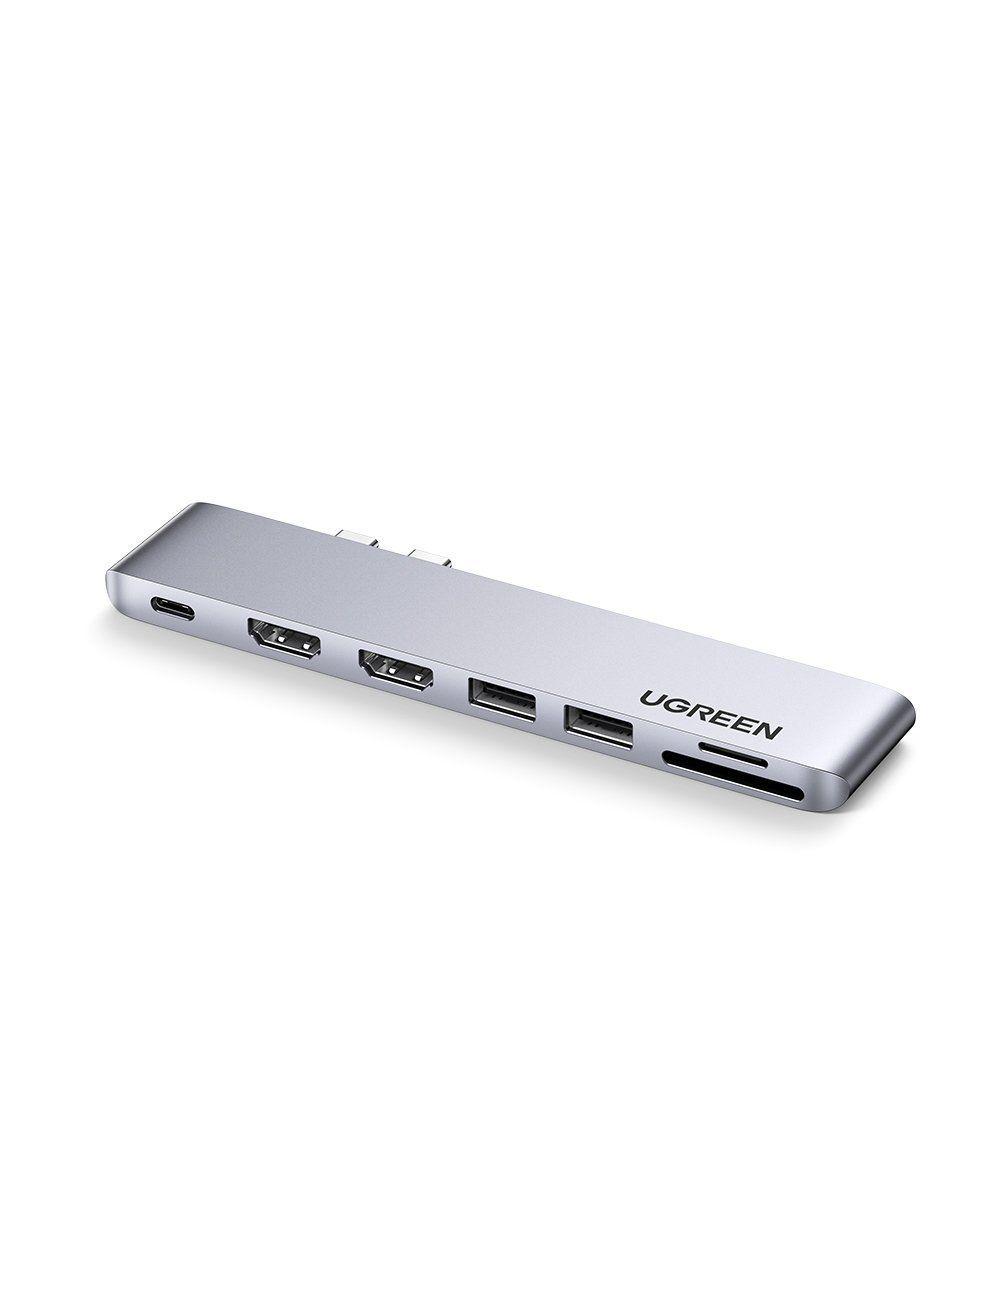 Ugreen UG80548CM356TK dùng cho macbook chip intel 2 cổng USB type C sang 2*USB 3.0+ 2xhdmi + SD&amp;TF + sạc 100W PD thunderbolt 3 - HÀNG CHÍNH HÃNG